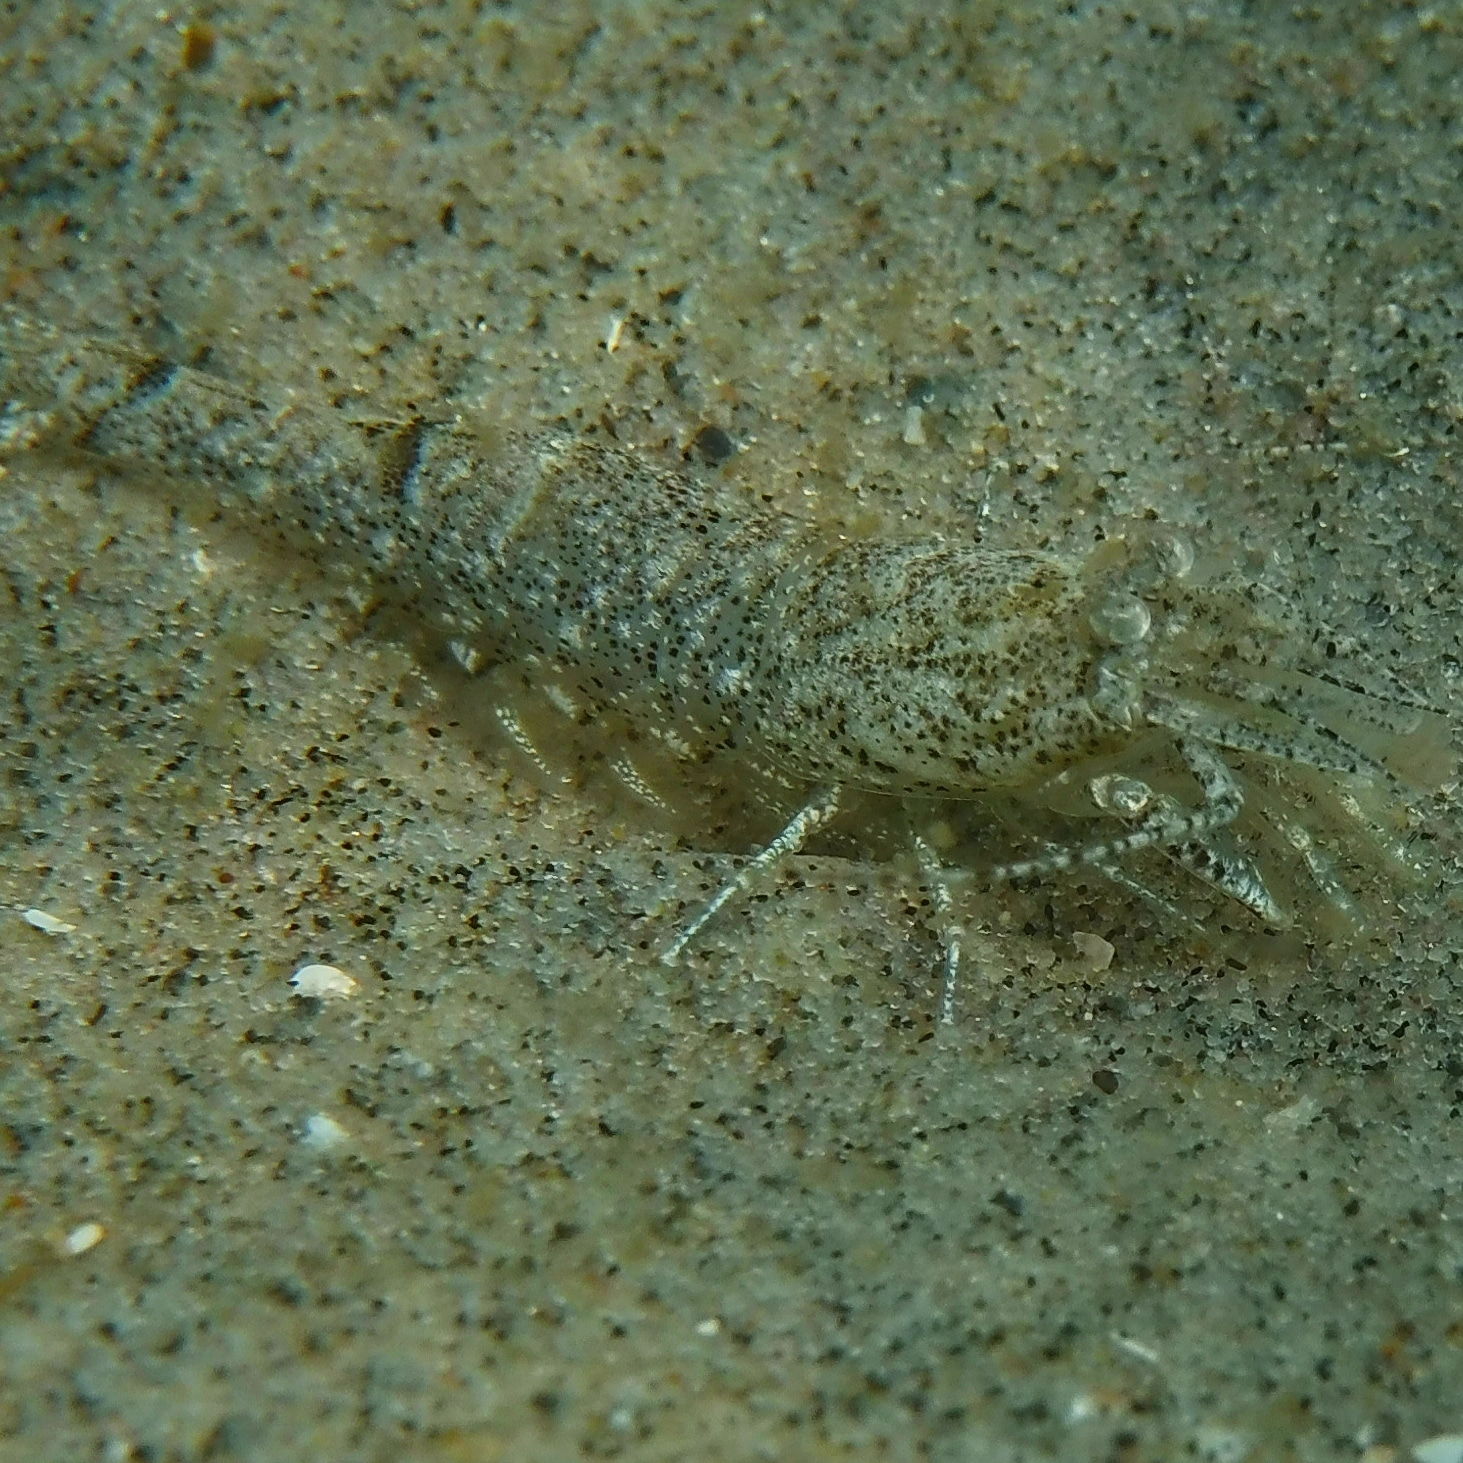 Commen shrimp but excellent camouflage. 